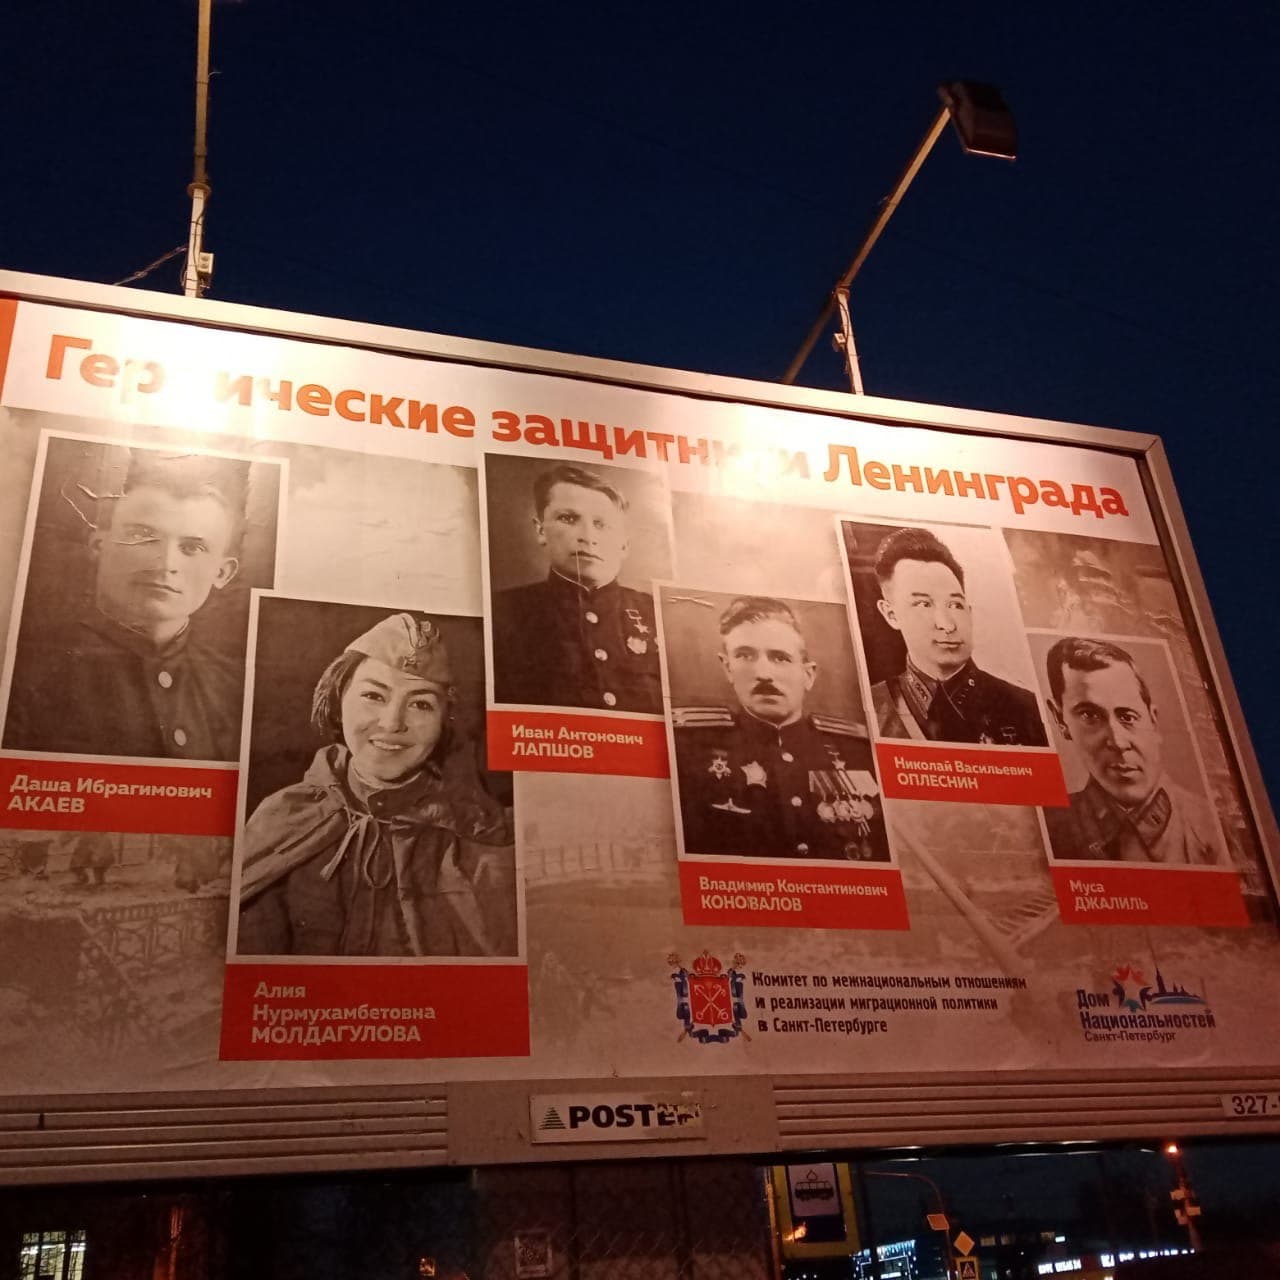 В Петербурге на баннере, посвященном защитникам Ленинграда, вместо Героя СССР разместили фото сыгравшей ее актрисы